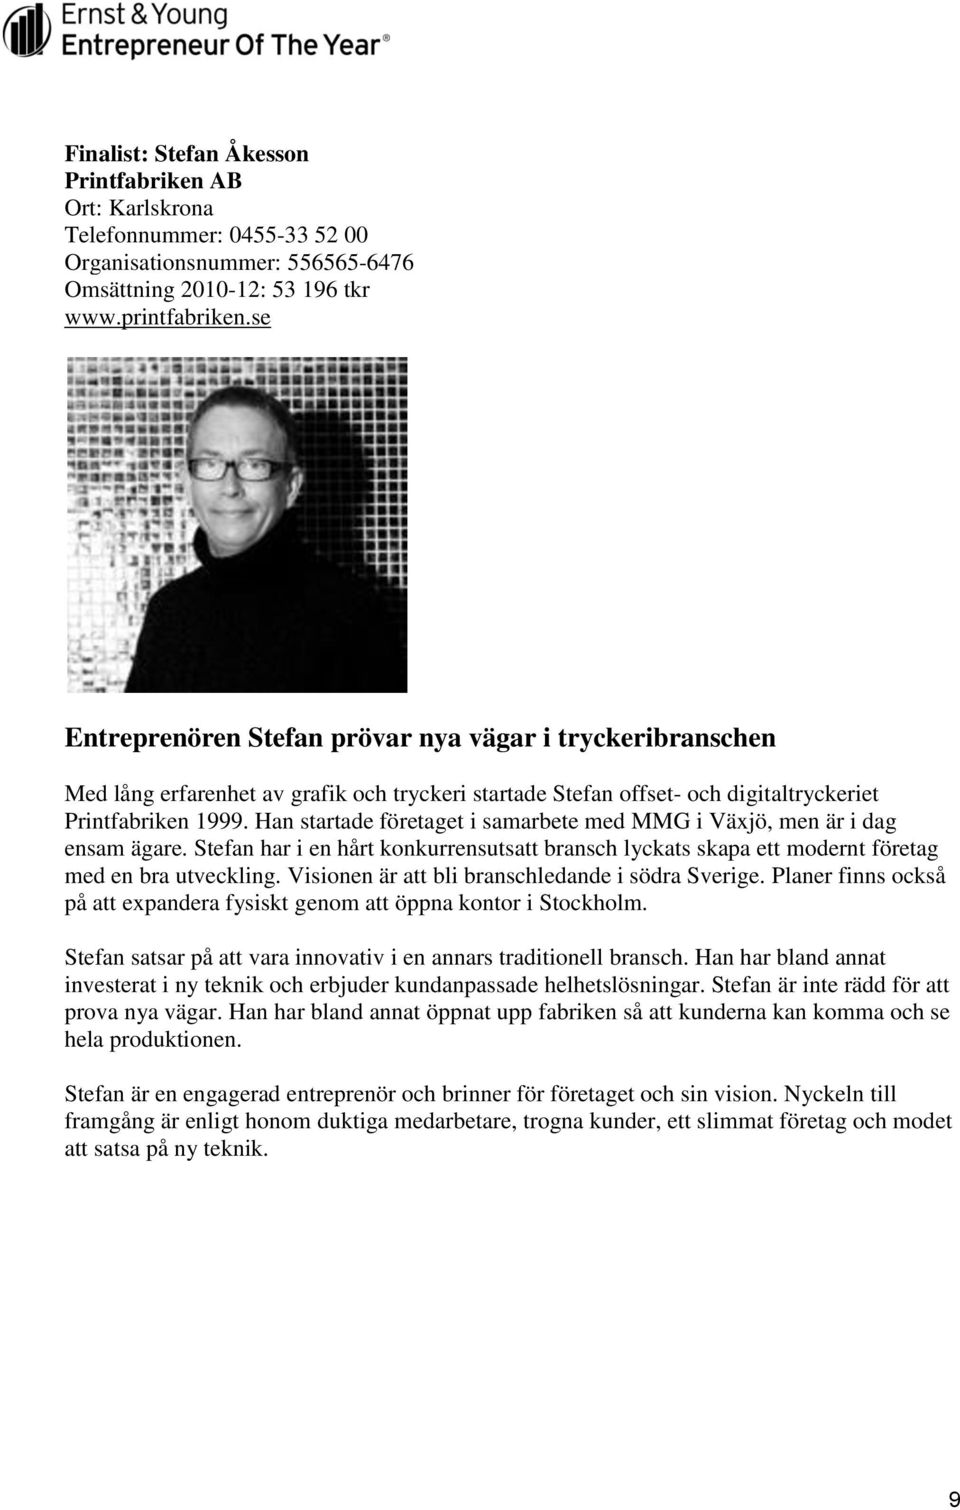 Han startade företaget i samarbete med MMG i Växjö, men är i dag ensam ägare. Stefan har i en hårt konkurrensutsatt bransch lyckats skapa ett modernt företag med en bra utveckling.